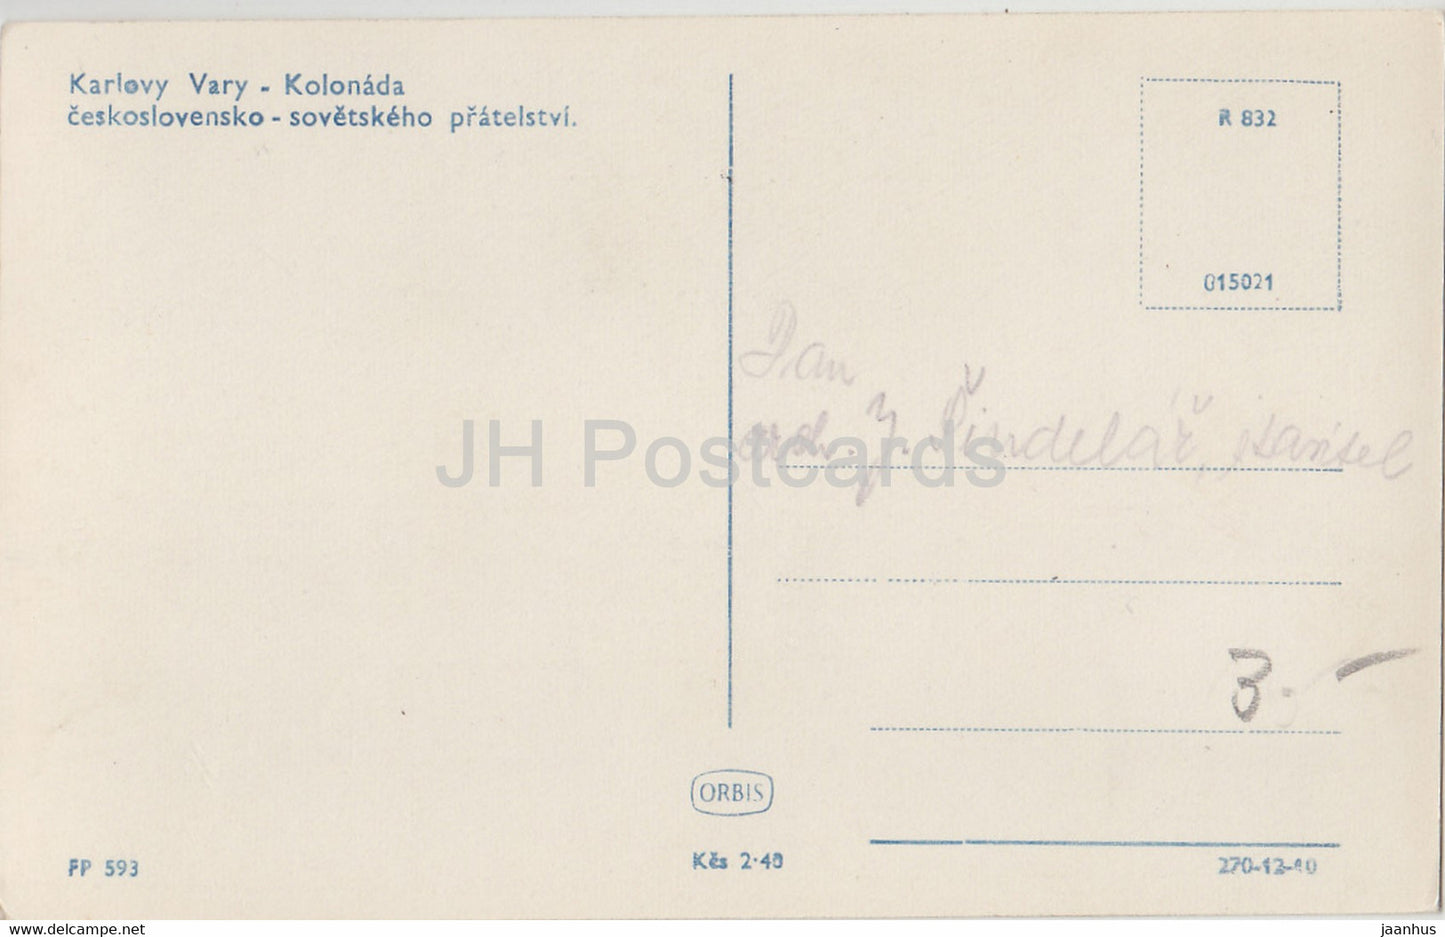 Karlovy Vary - Karlsbad - kolonada - Colonnade - 593 - carte postale ancienne - Tchécoslovaquie - République tchèque - inutilisée